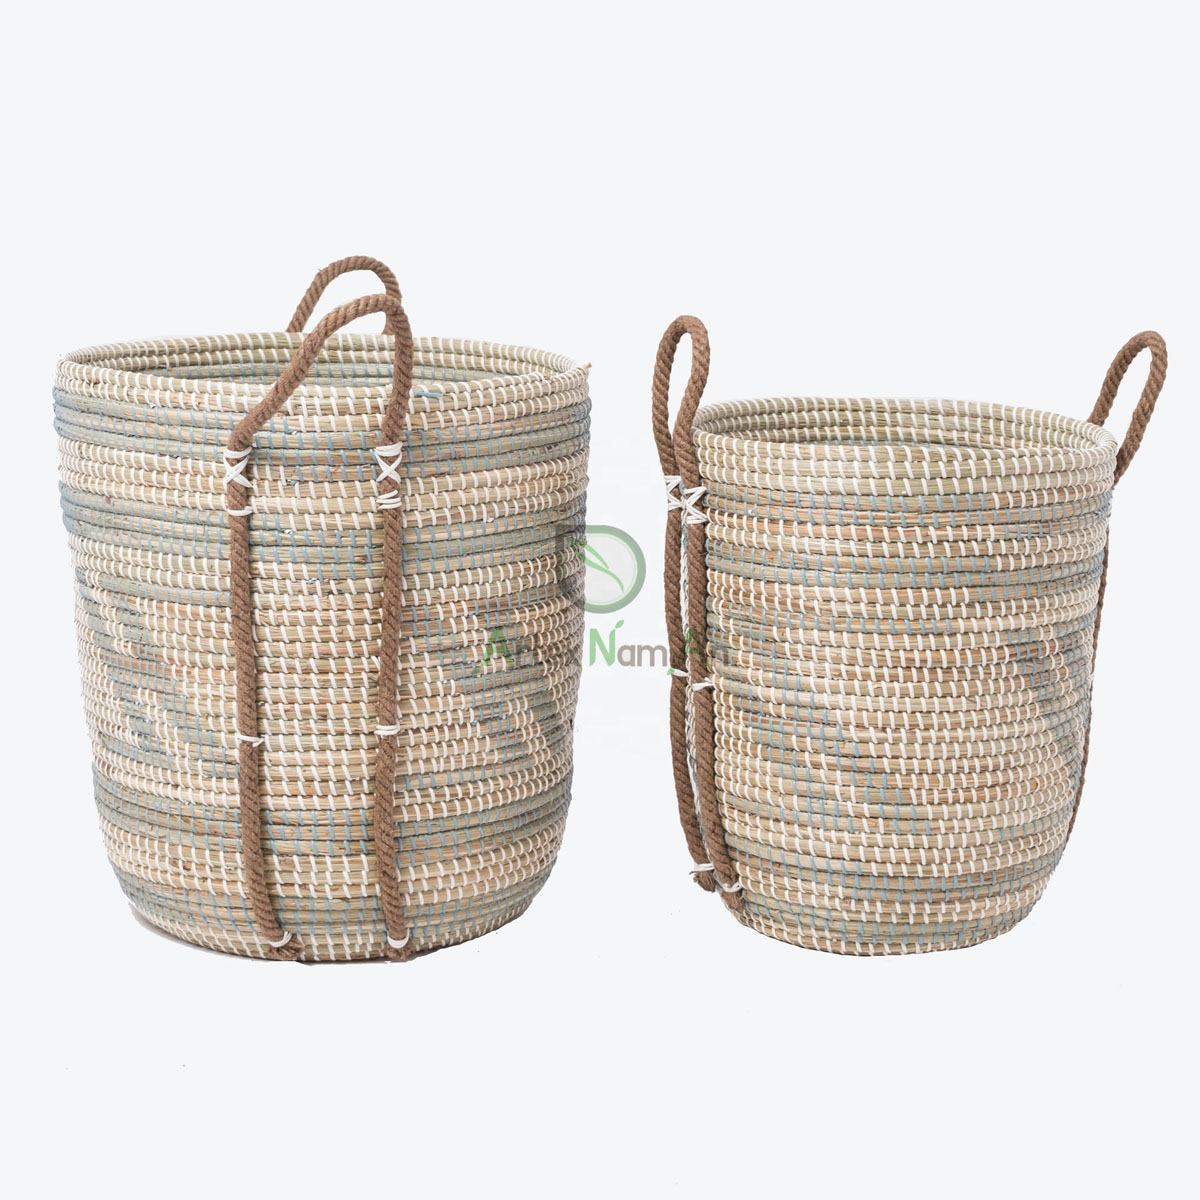 Seagrass Decorative Hamper Basket Organizer With Handles SG 09 05 424 05